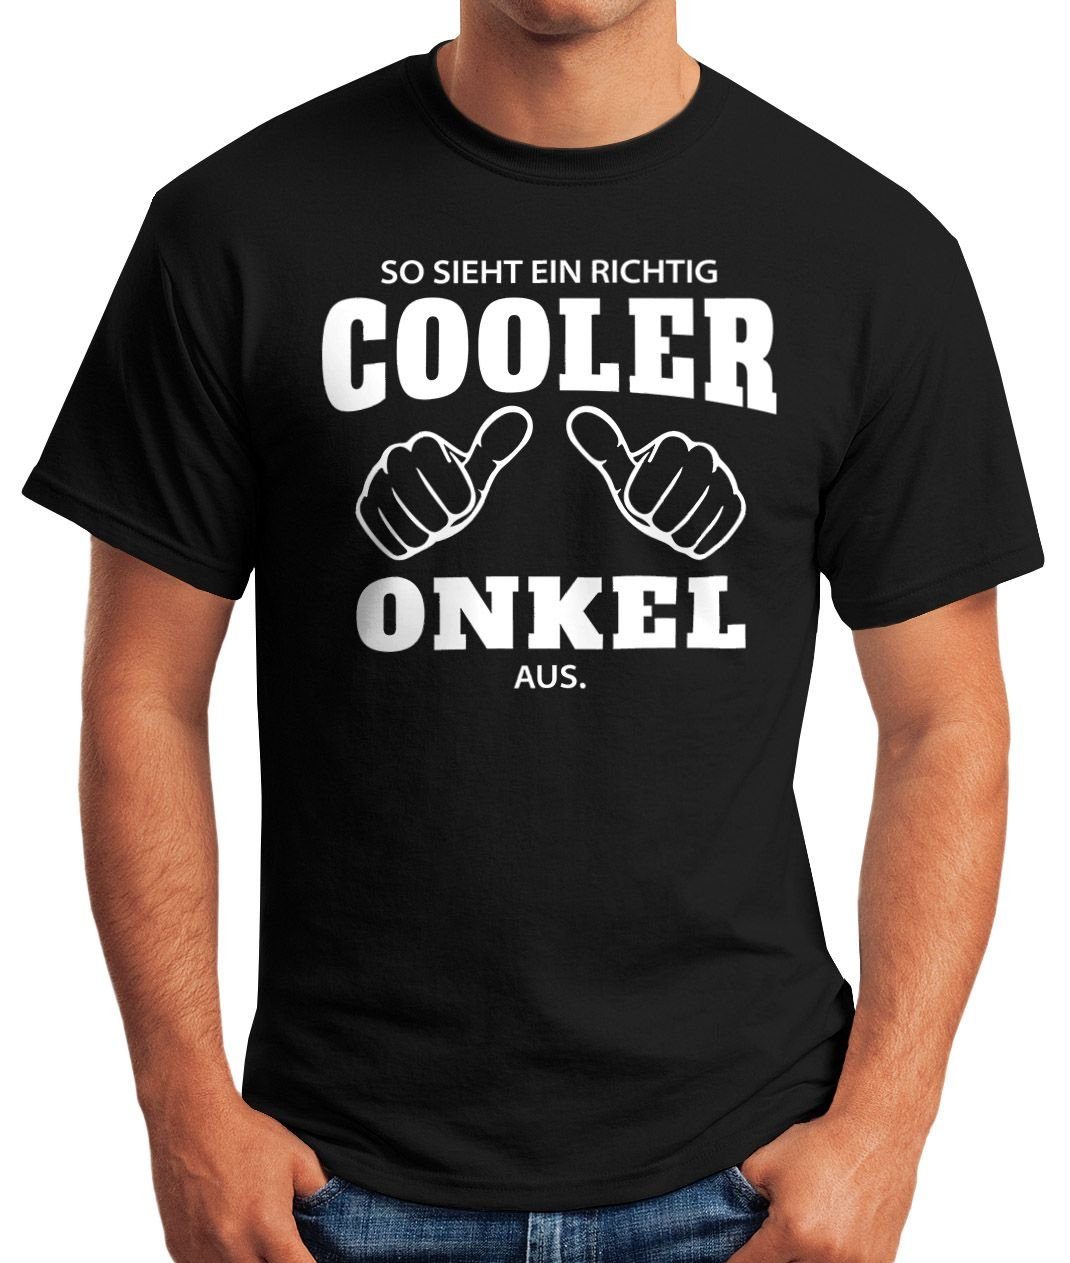 richtig Print aus Fun-Shirt schwarz Moonworks® Onkel So mit Object] [object MoonWorks T-Shirt cooler Print-Shirt richtig ein ein sieht Herren